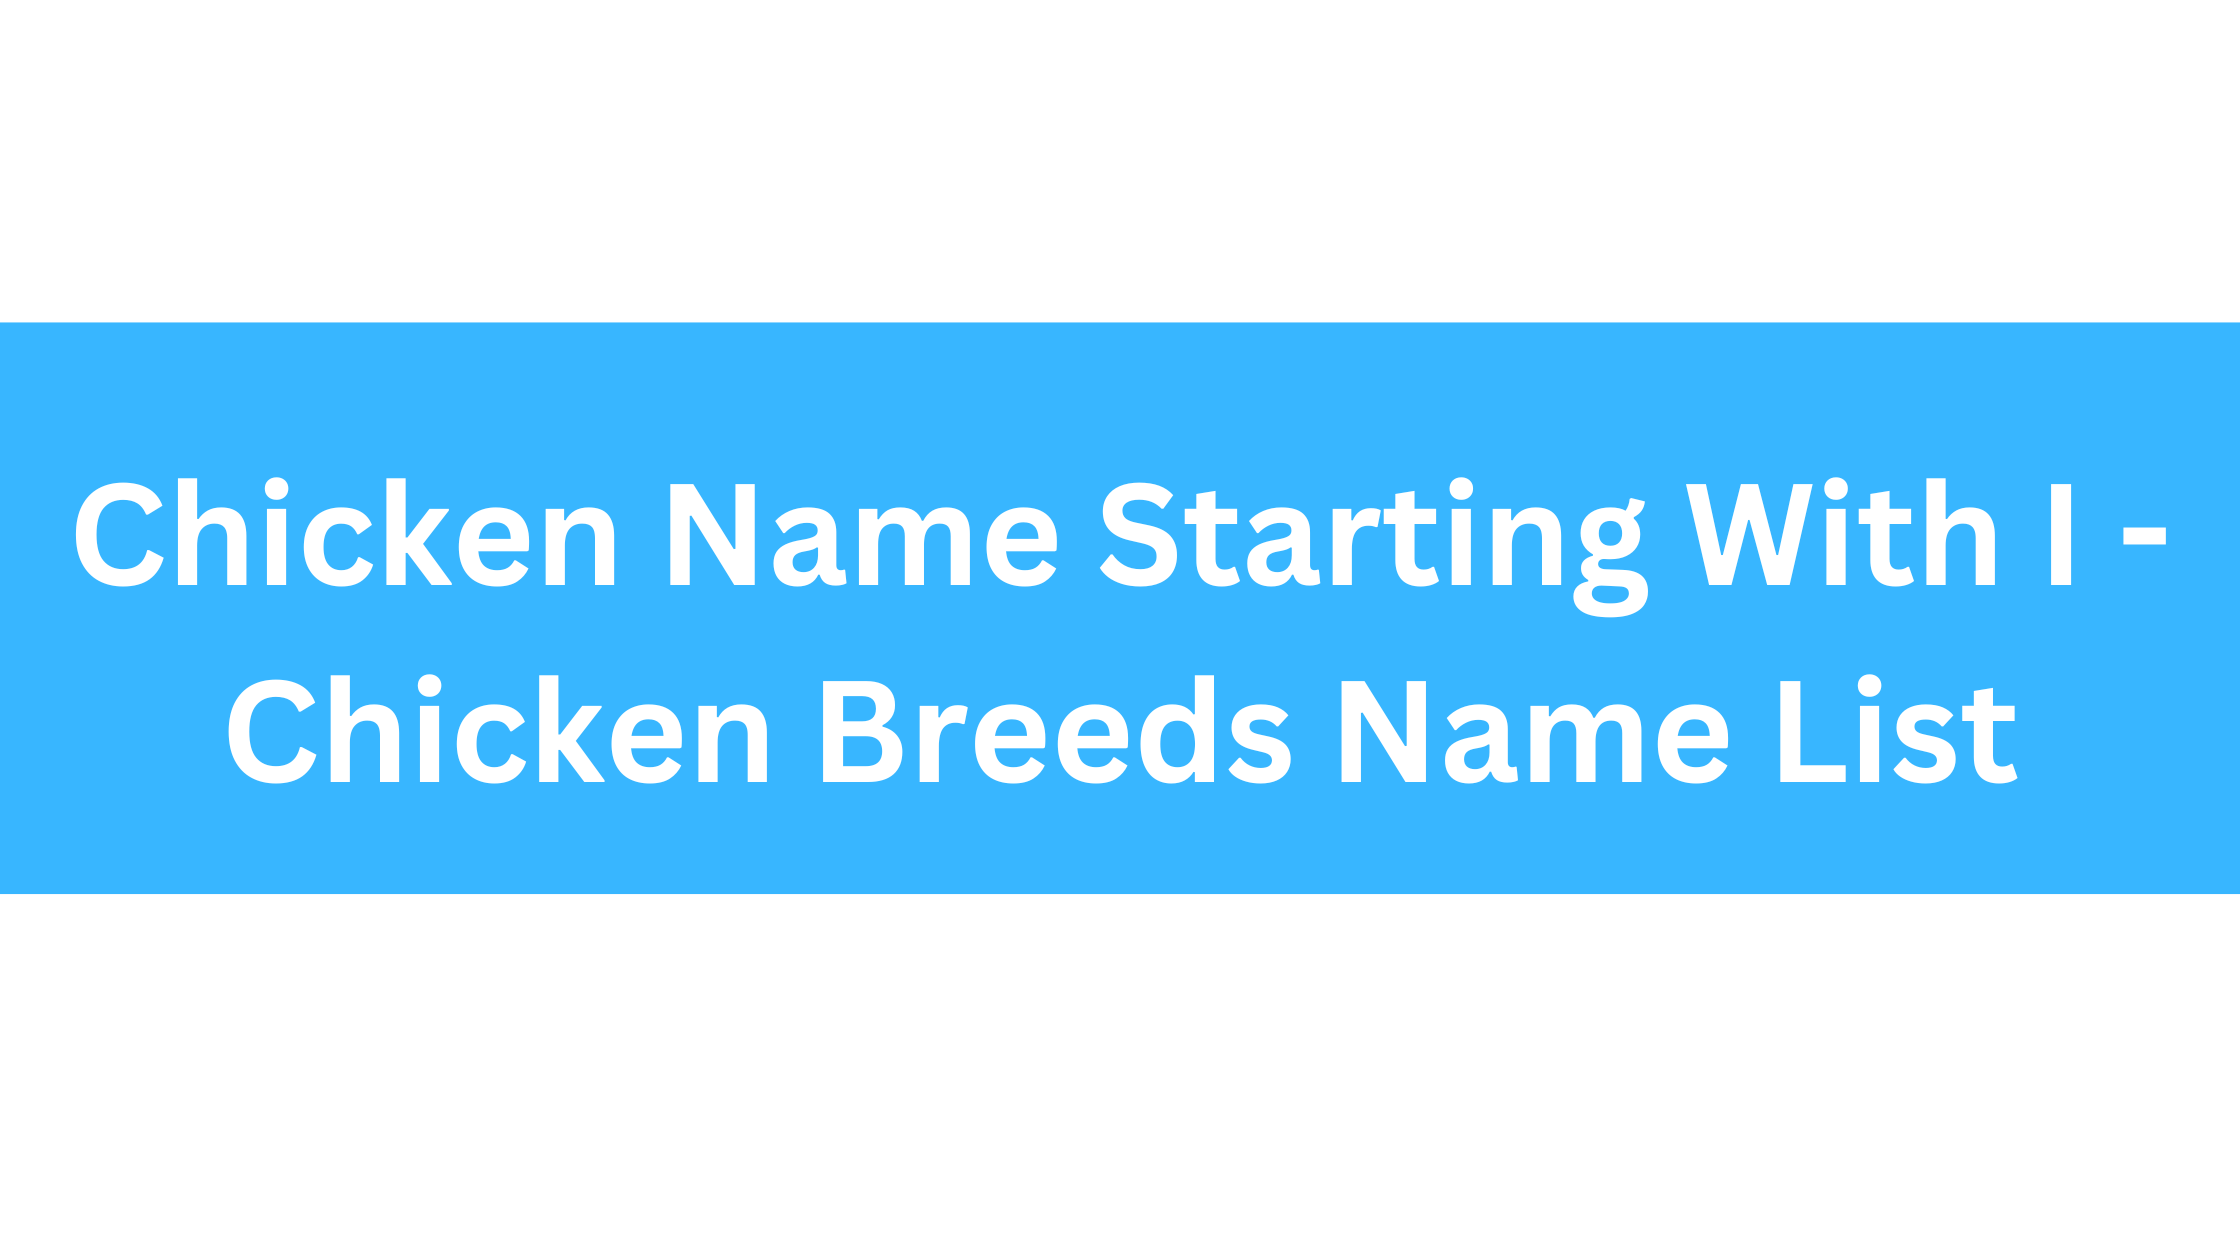 Chicken Breeds That Start With I